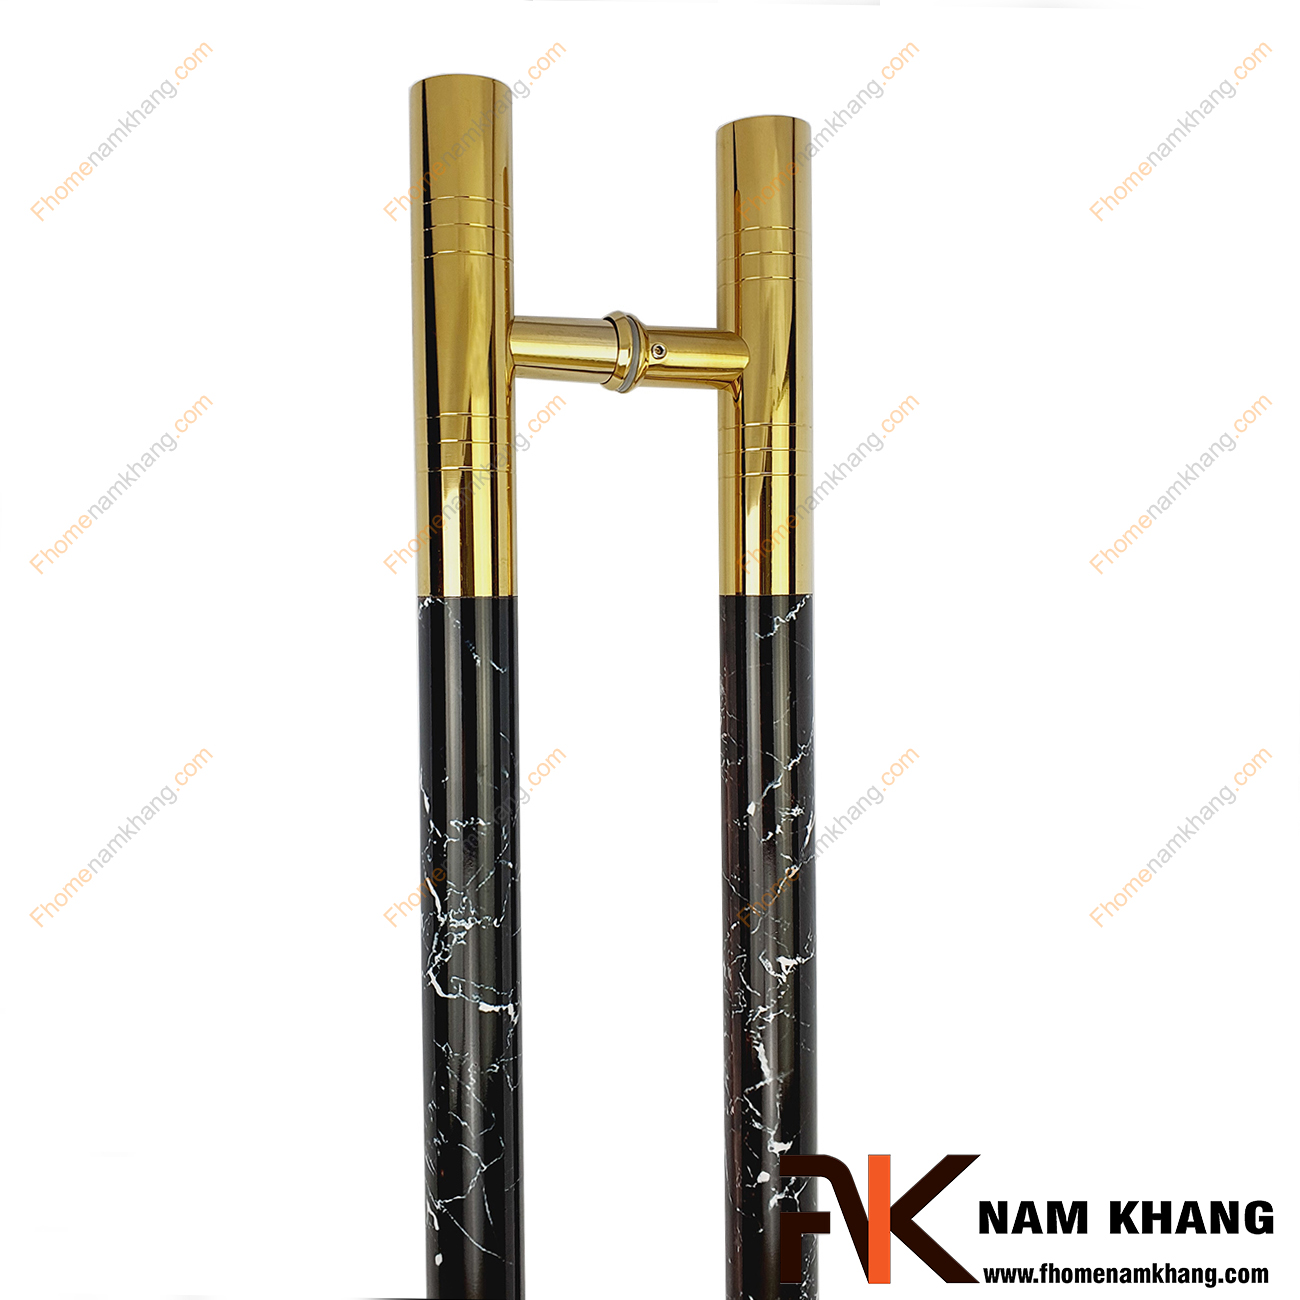 Tay nắm cửa chính màu vàng bóng phối vân đá đen NKC014-DV được sản xuất từ inox cao cấp, có kích thước lớn chuyên dùng cho cửa sảnh, cửa cổng, cửa chính, cửa 2 hoặc 4 cánh,...